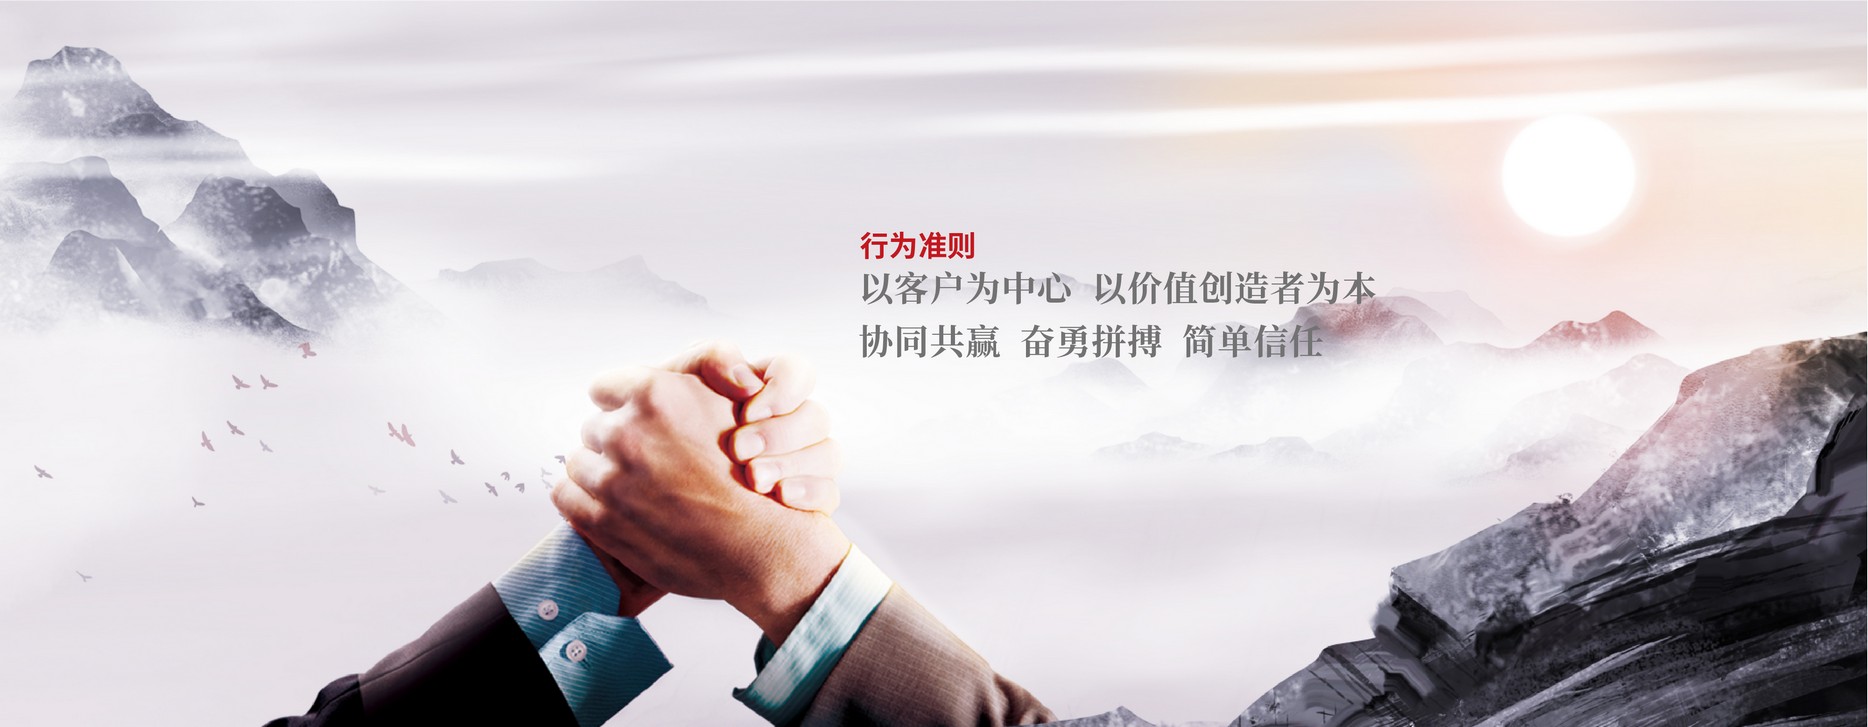 关于当前产品1055好彩客·(中国)官方网站的成功案例等相关图片